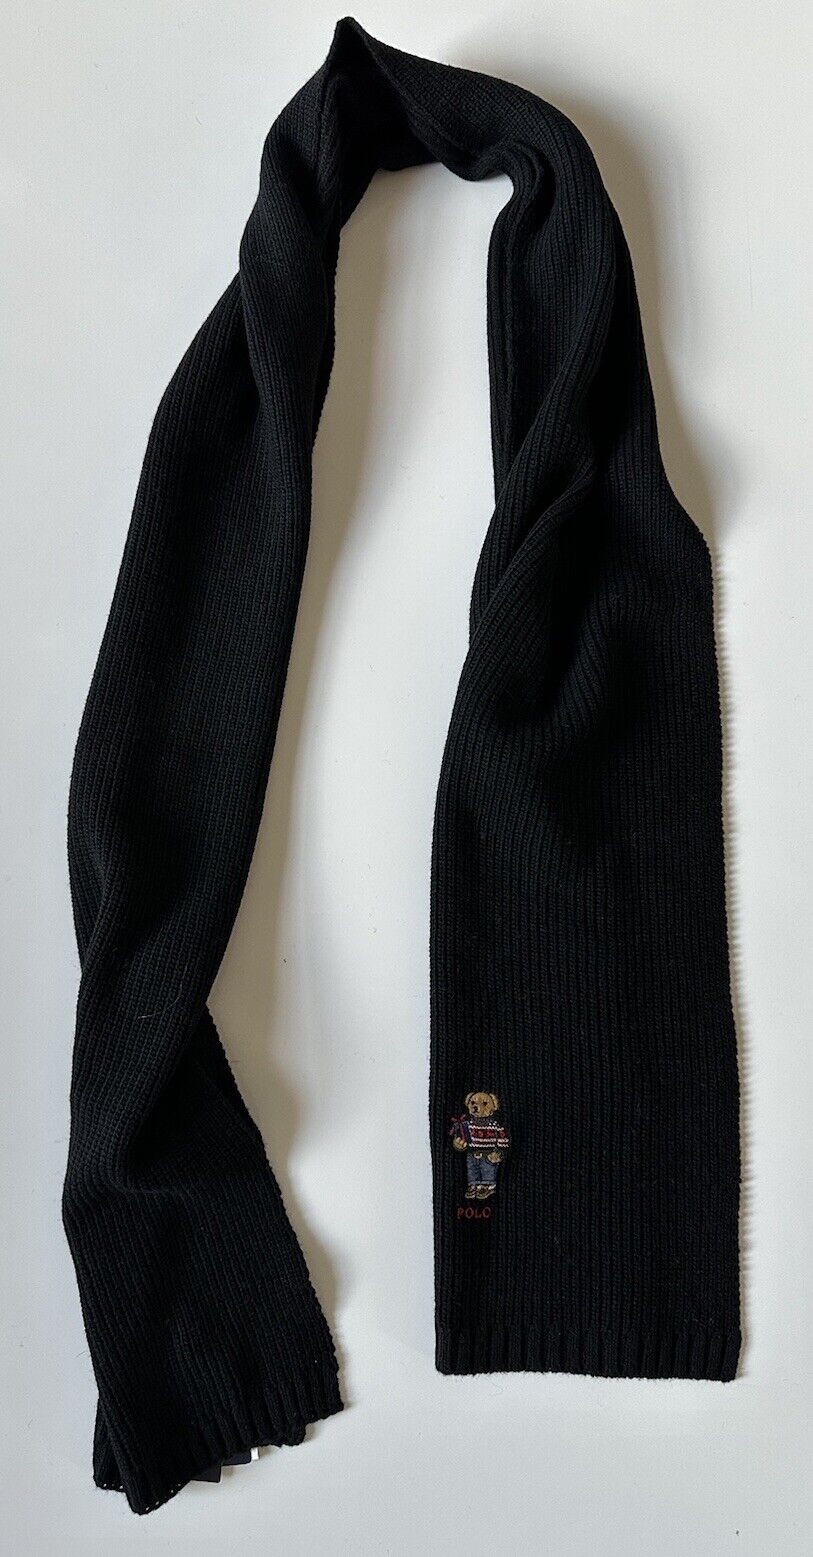 NWT $78 Polo Ralph Lauren Bear Knit Black Scarf 183cmx30.5cm